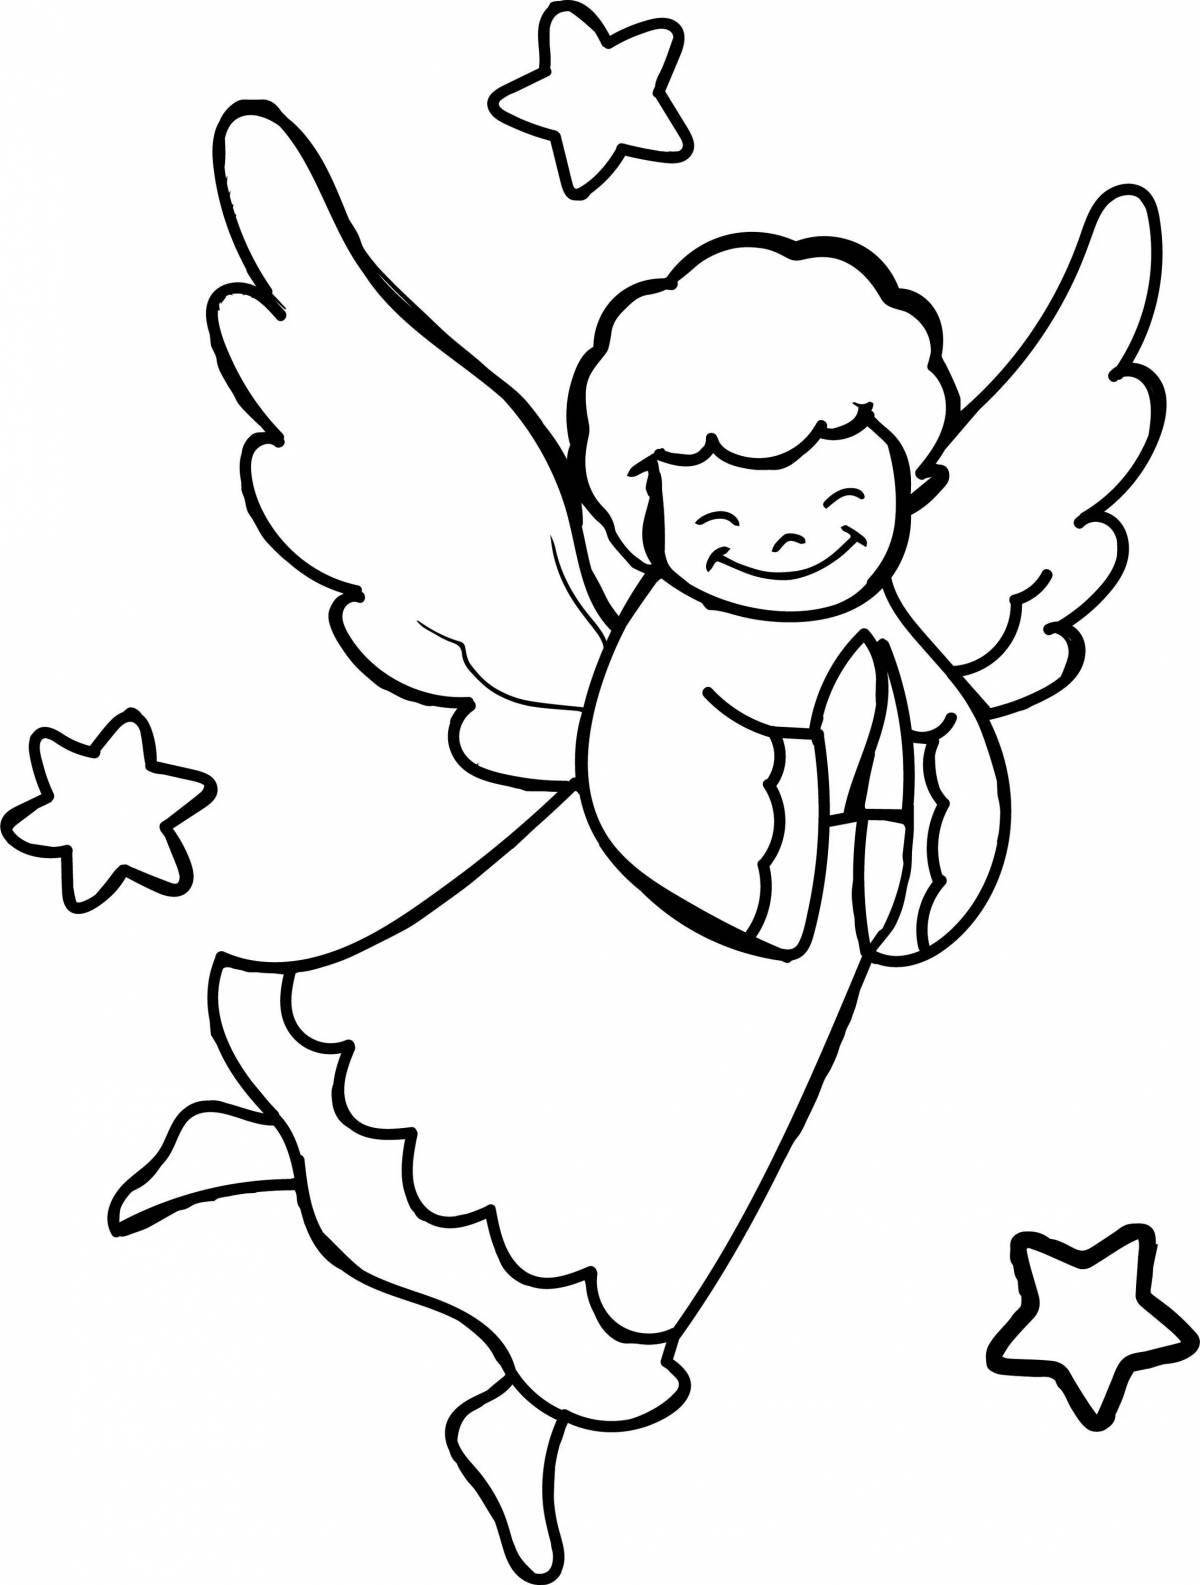 Божественная раскраска ангел с крыльями для детей